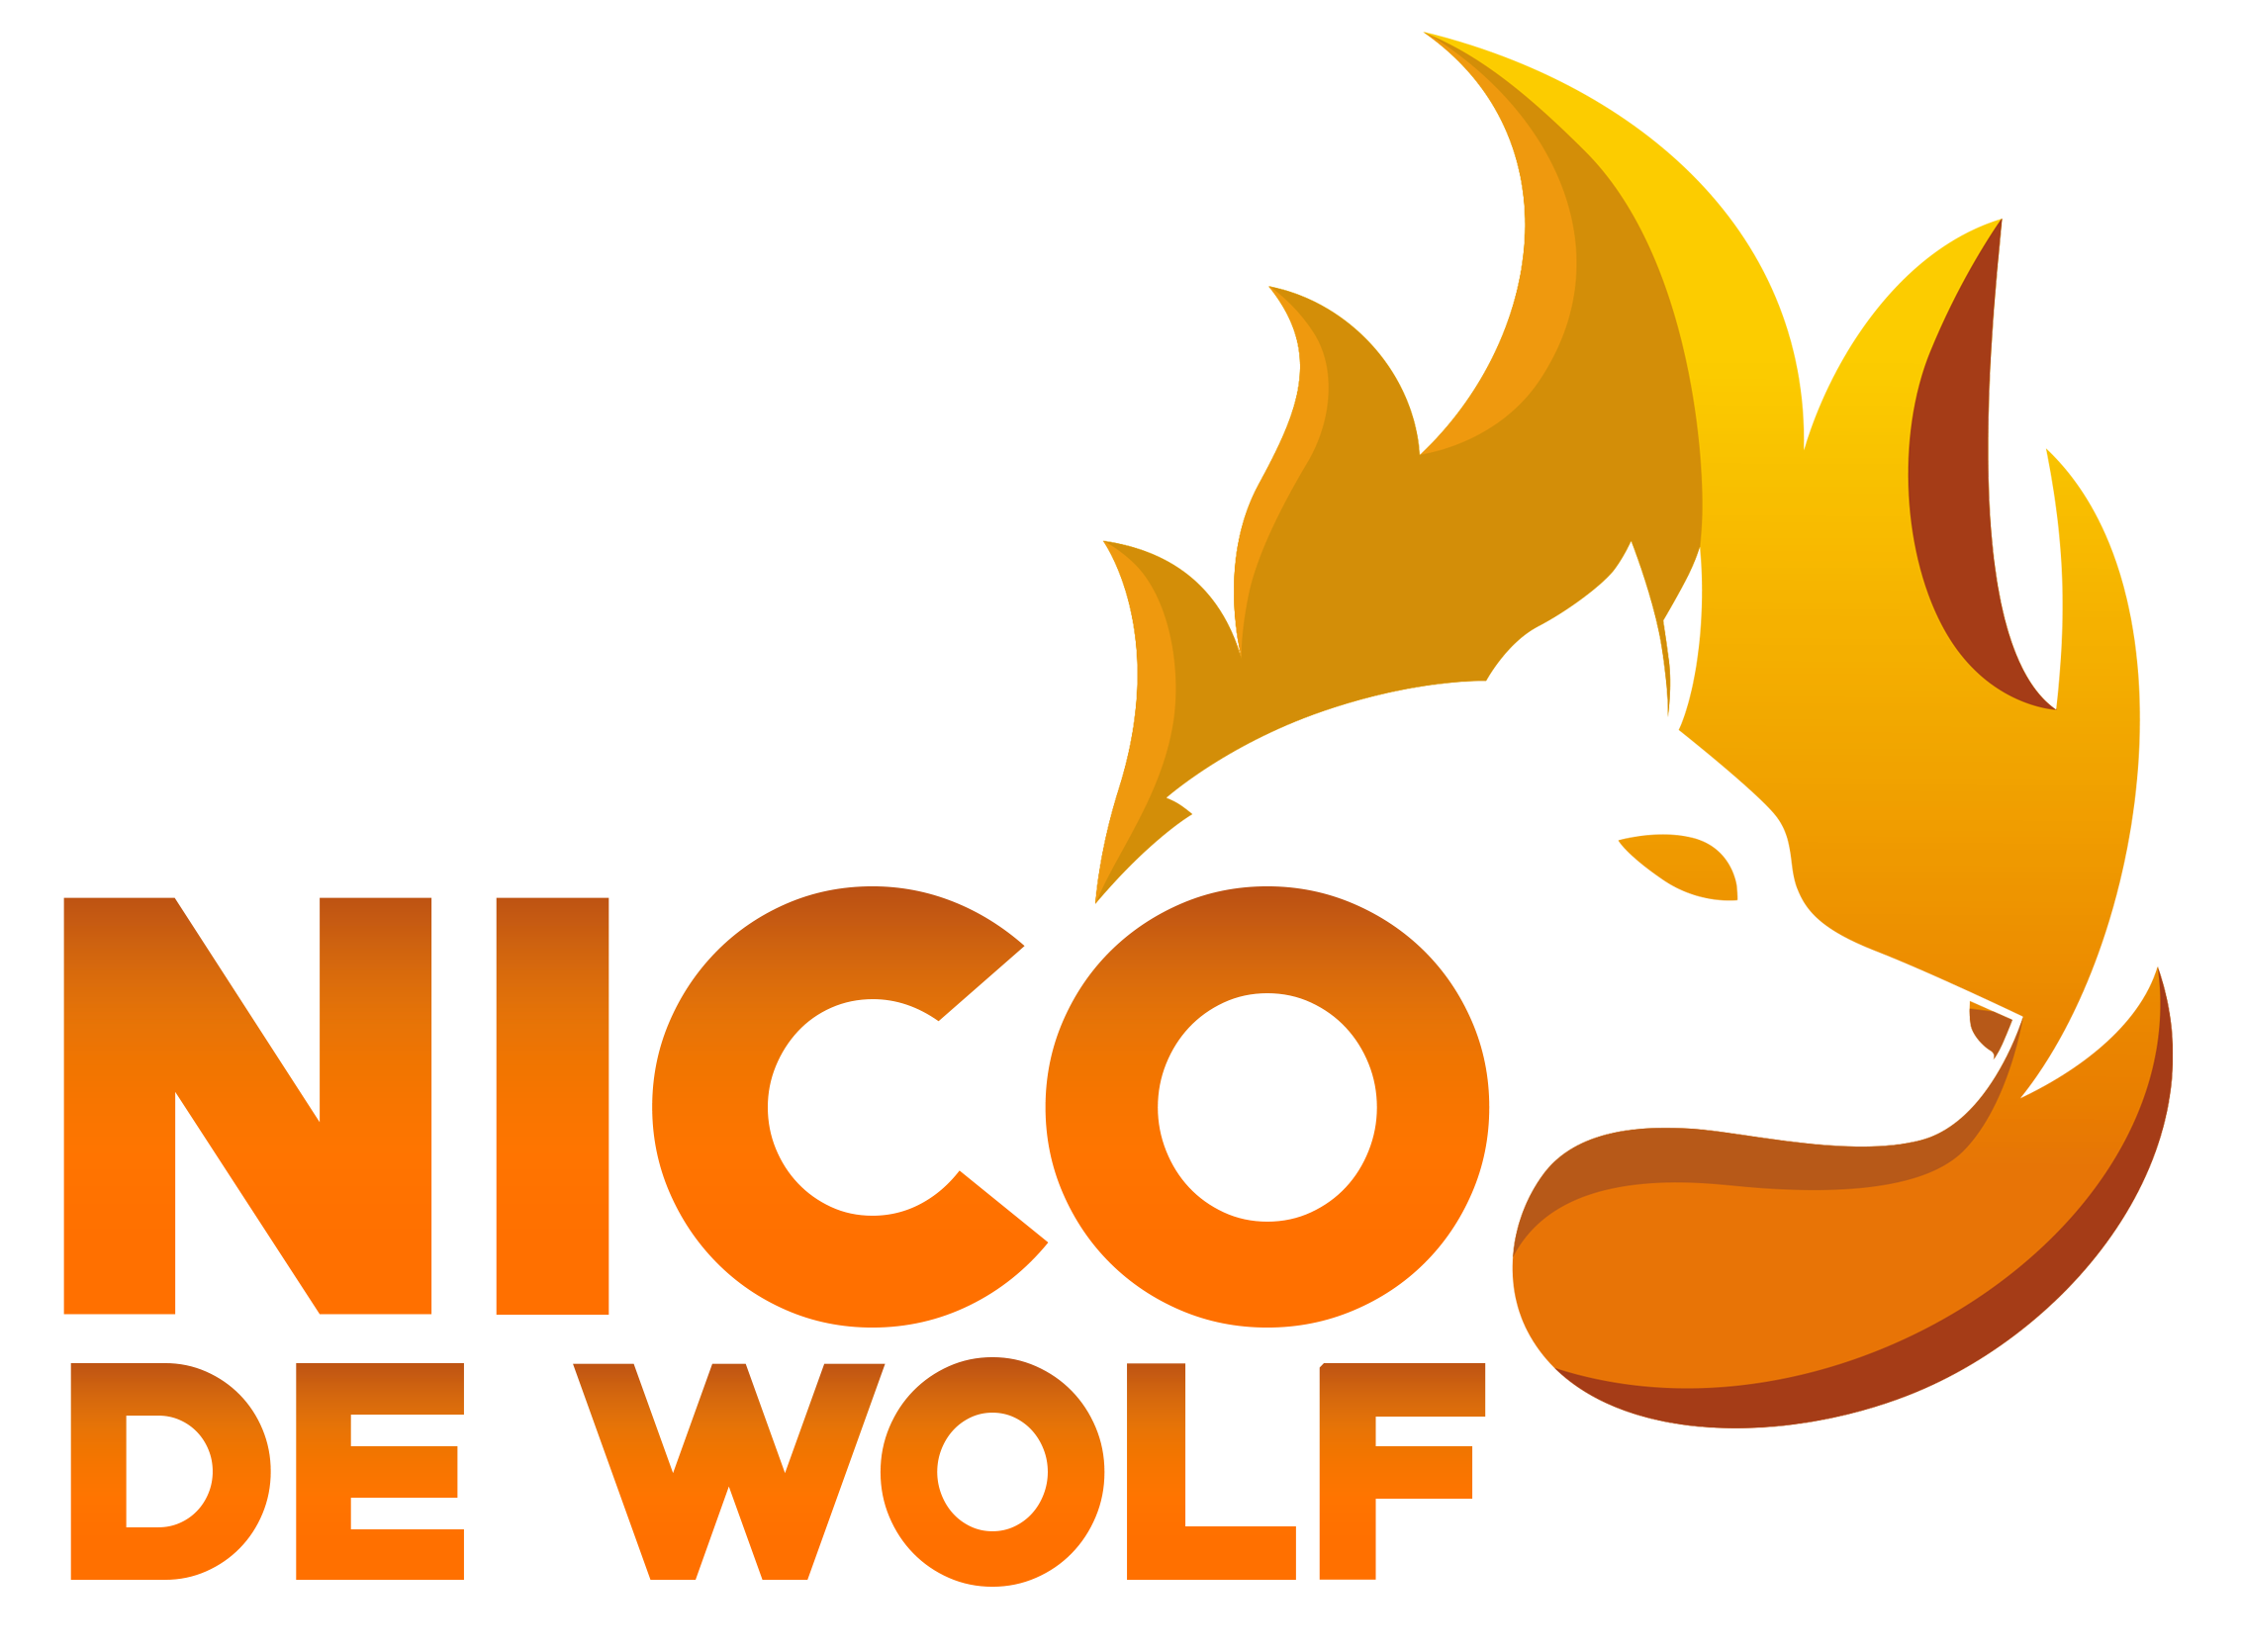 Nico De Wolf